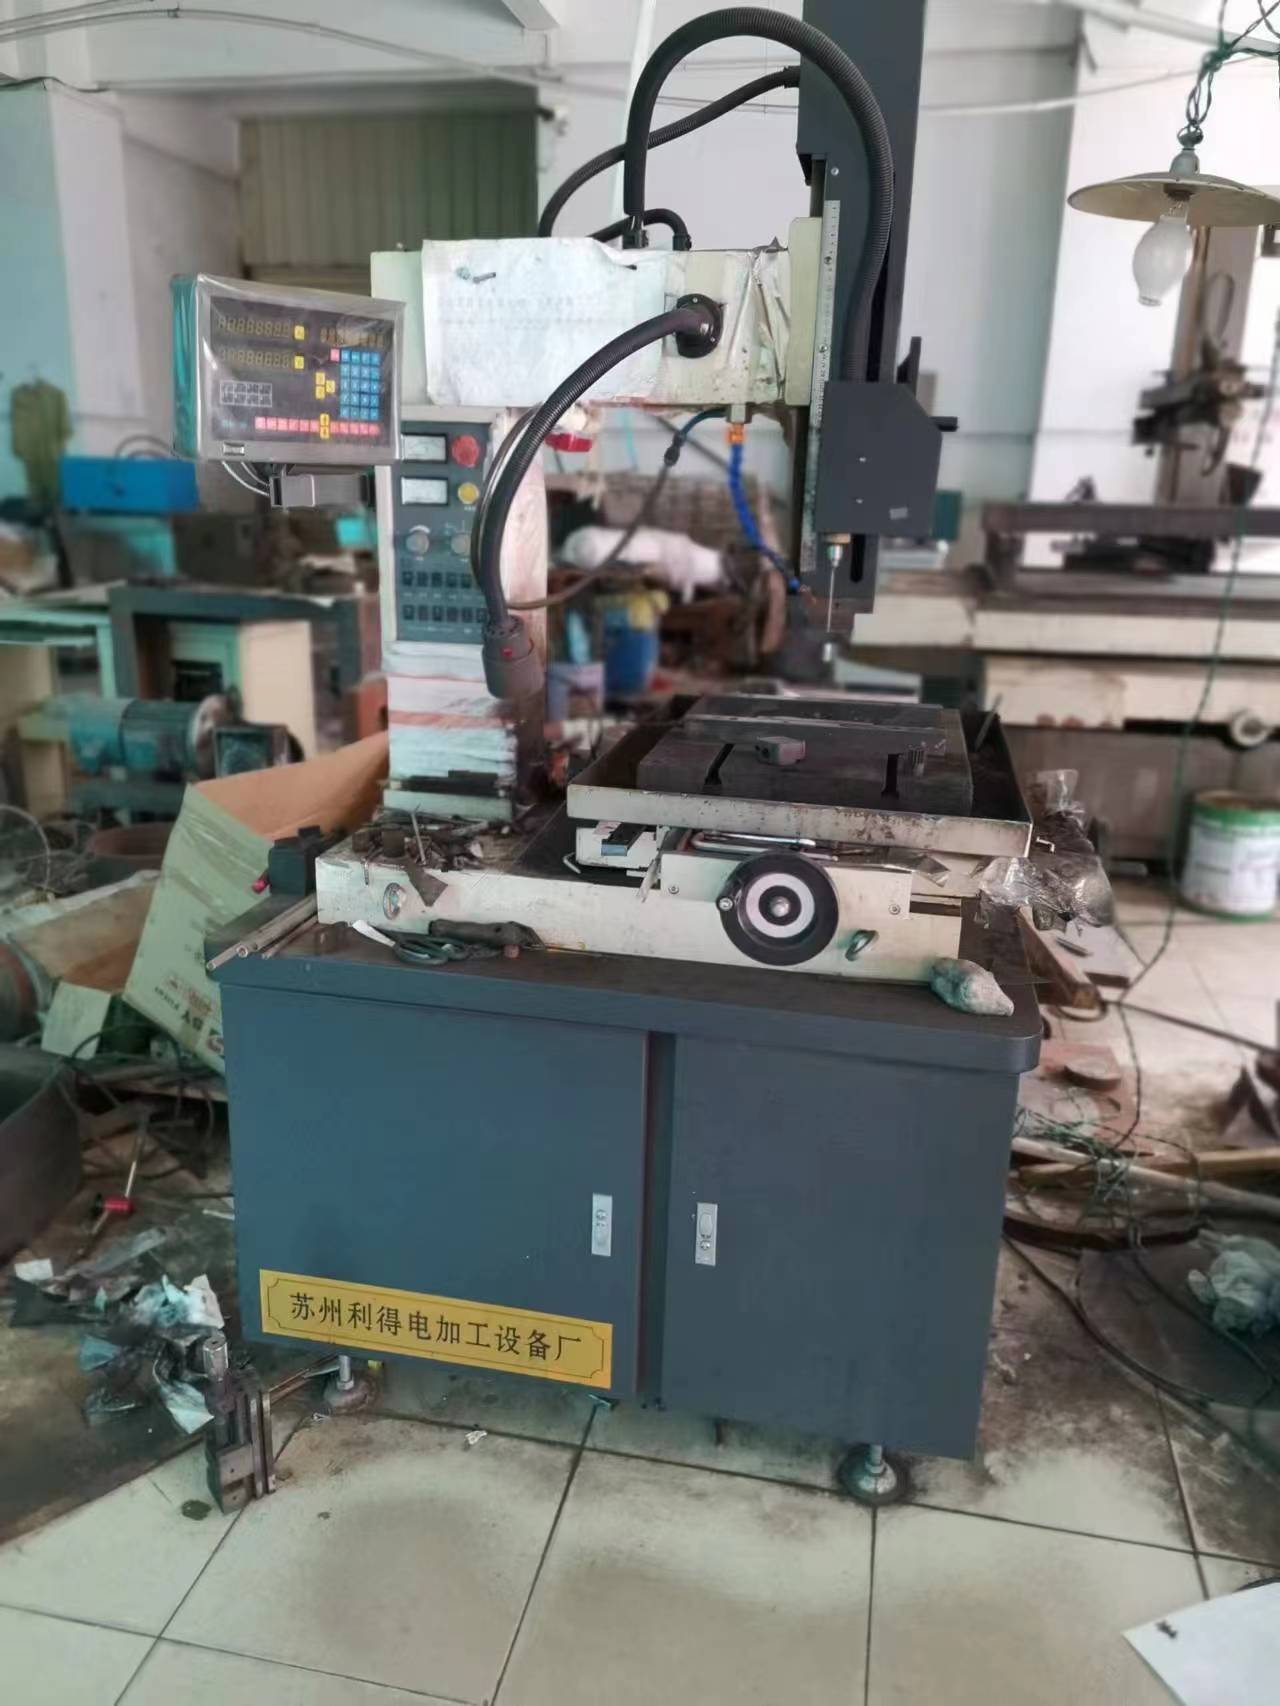 番禺区废旧机械设备回收公司